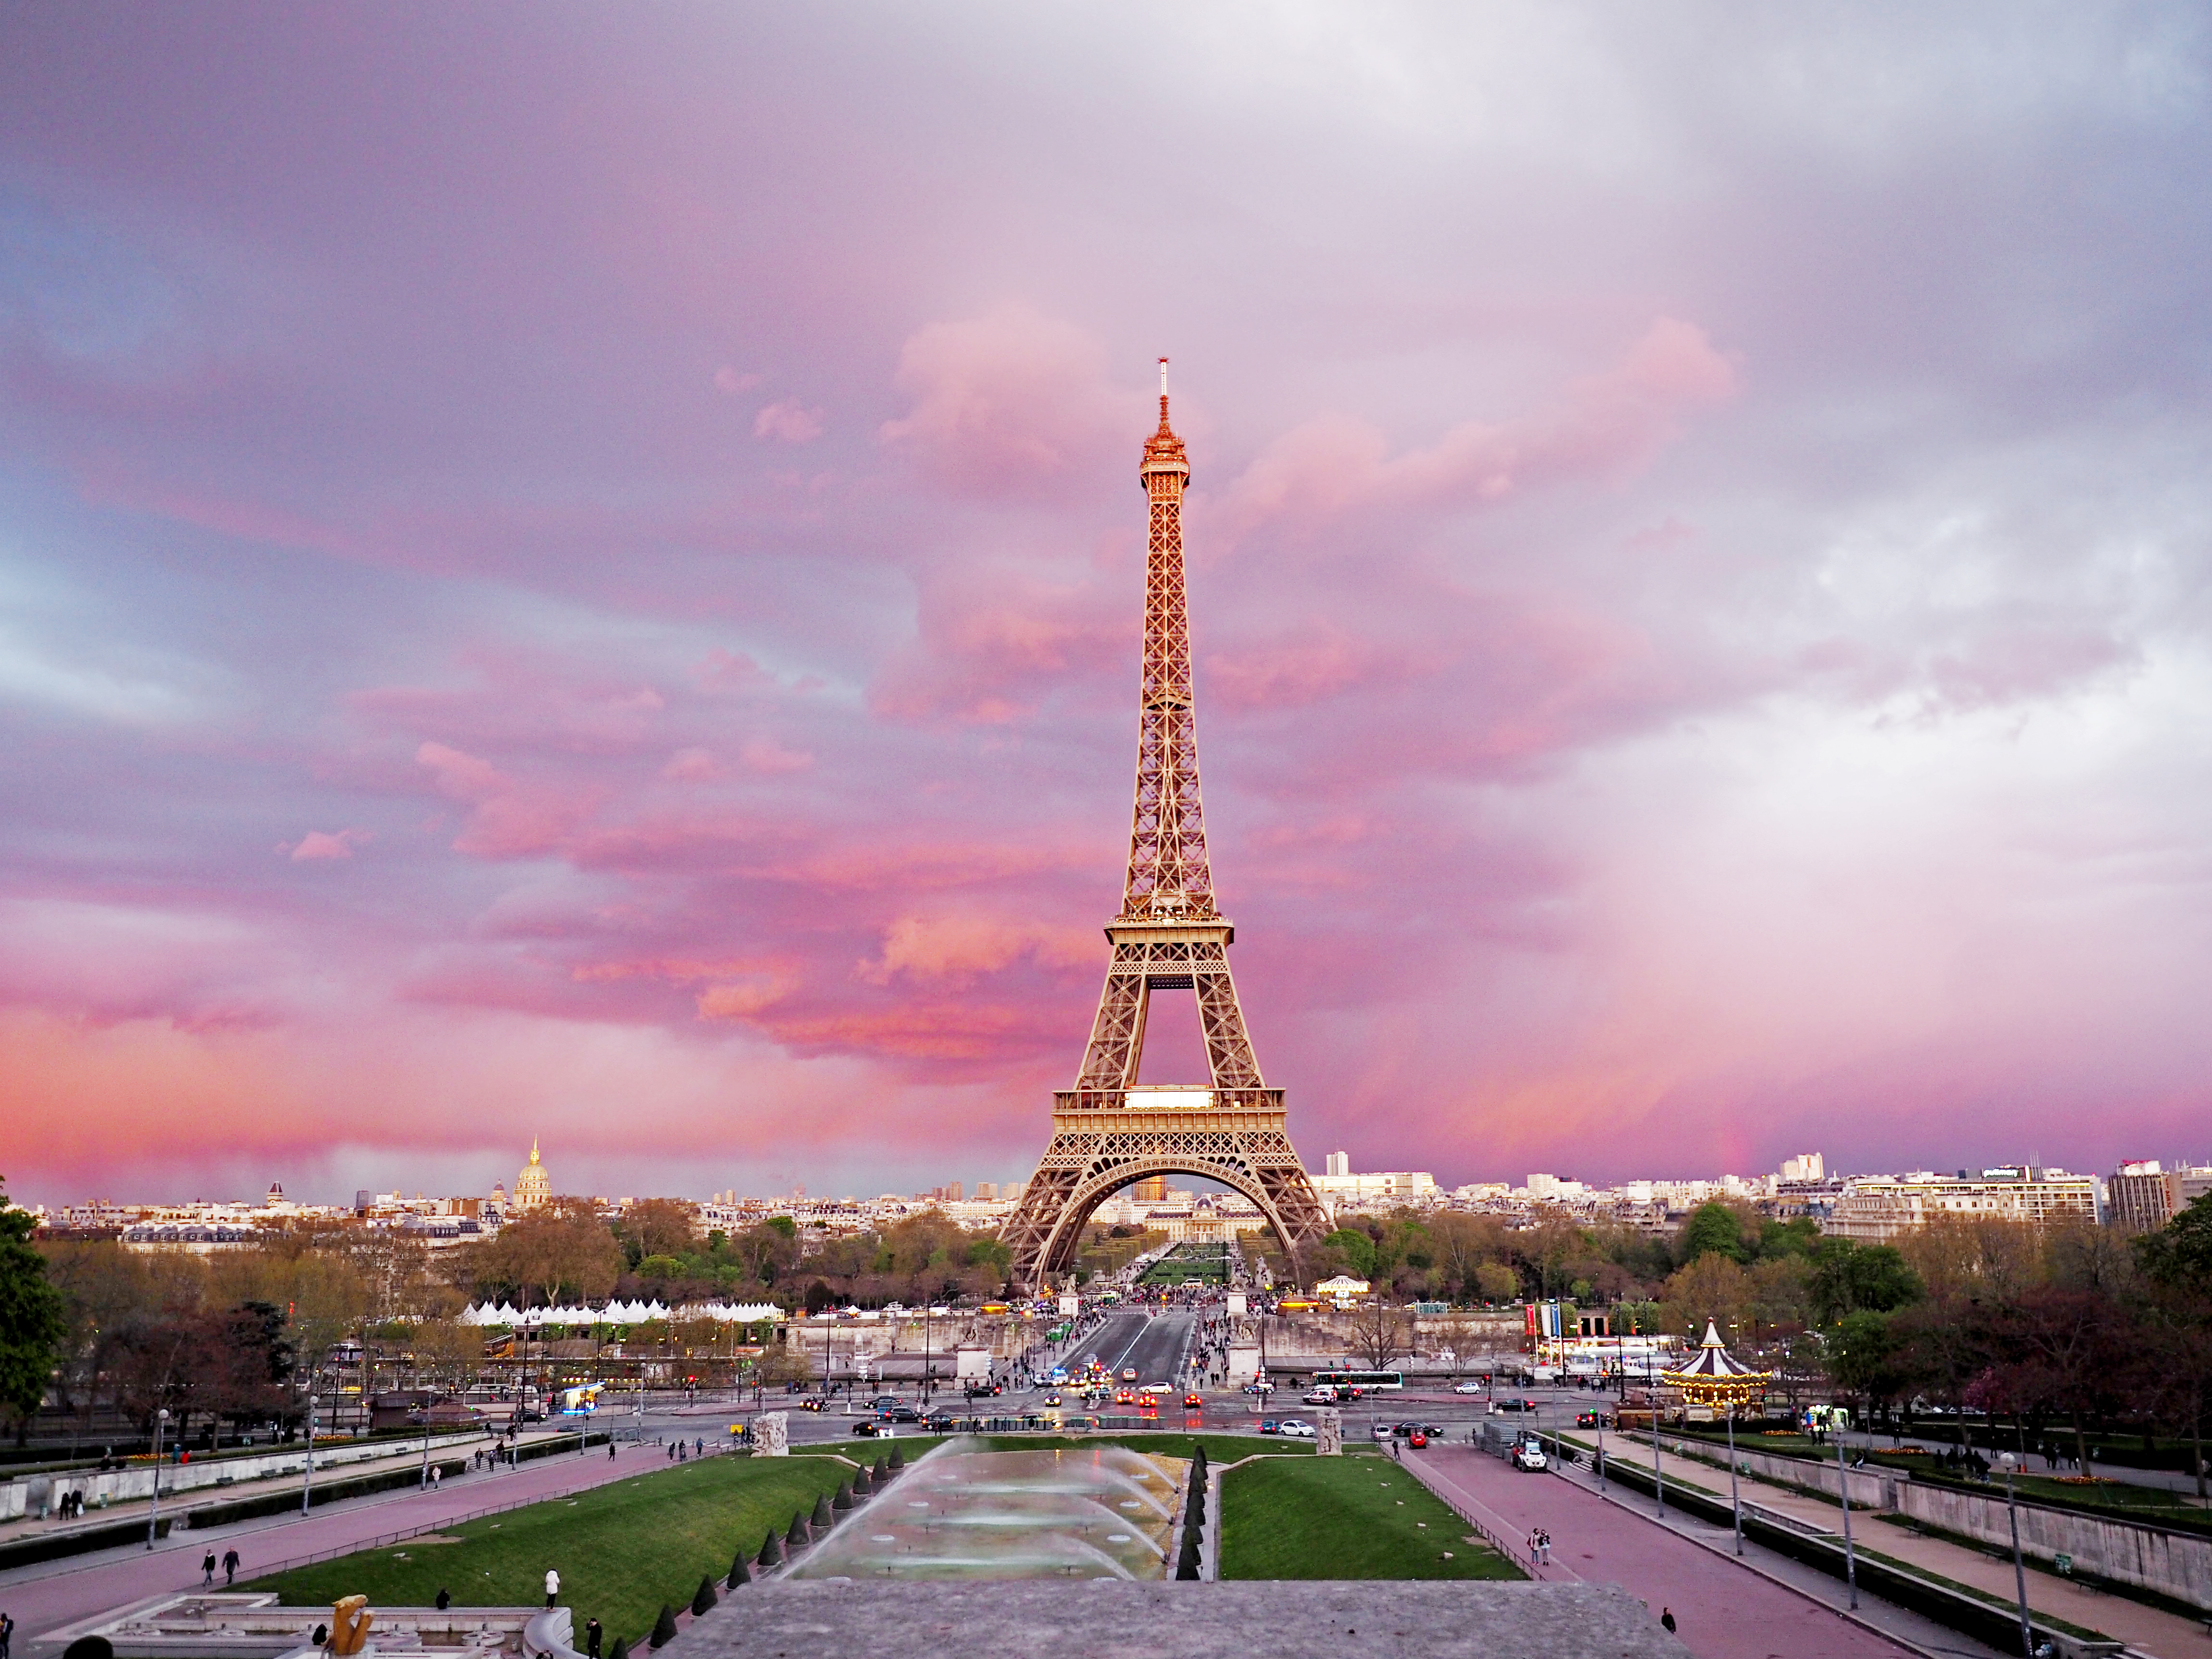 美图美景 摄影 旅行 法国 巴黎 埃菲尔铁塔 素材 超清 高清 壁纸 桌面